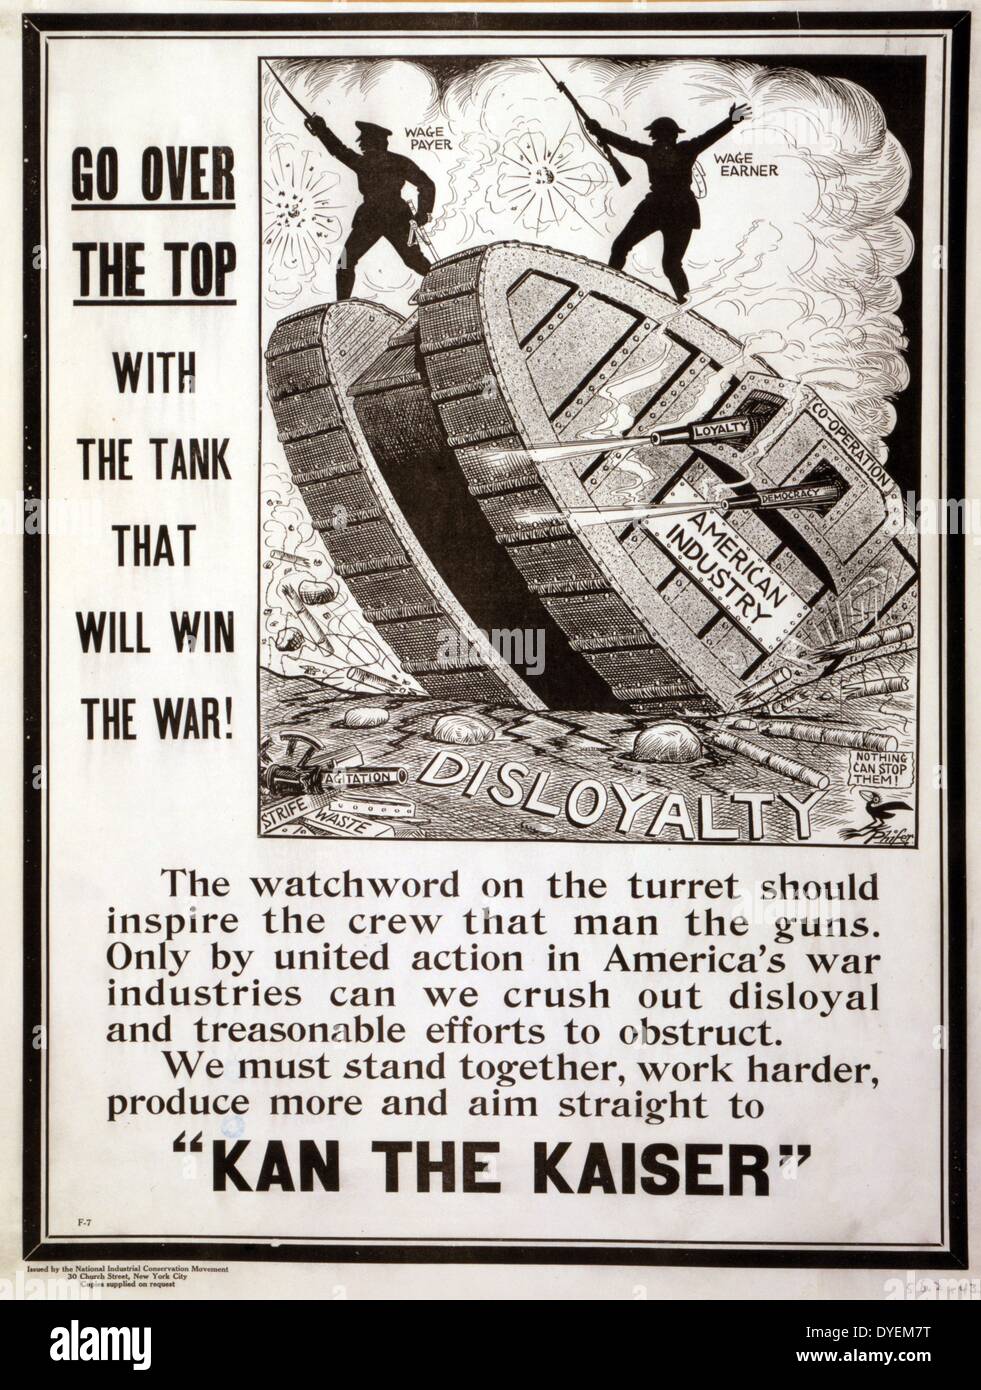 Vaya por encima de la parte superior del tanque que va a ganar la guerra! Publicado: 1917 (poster) Póster que muestra un "depósito" de la industria americana de rodadura en 'Disloyalty." un pequeño pájaro, comenta: "Nada puede detenerlos!". Foto de stock